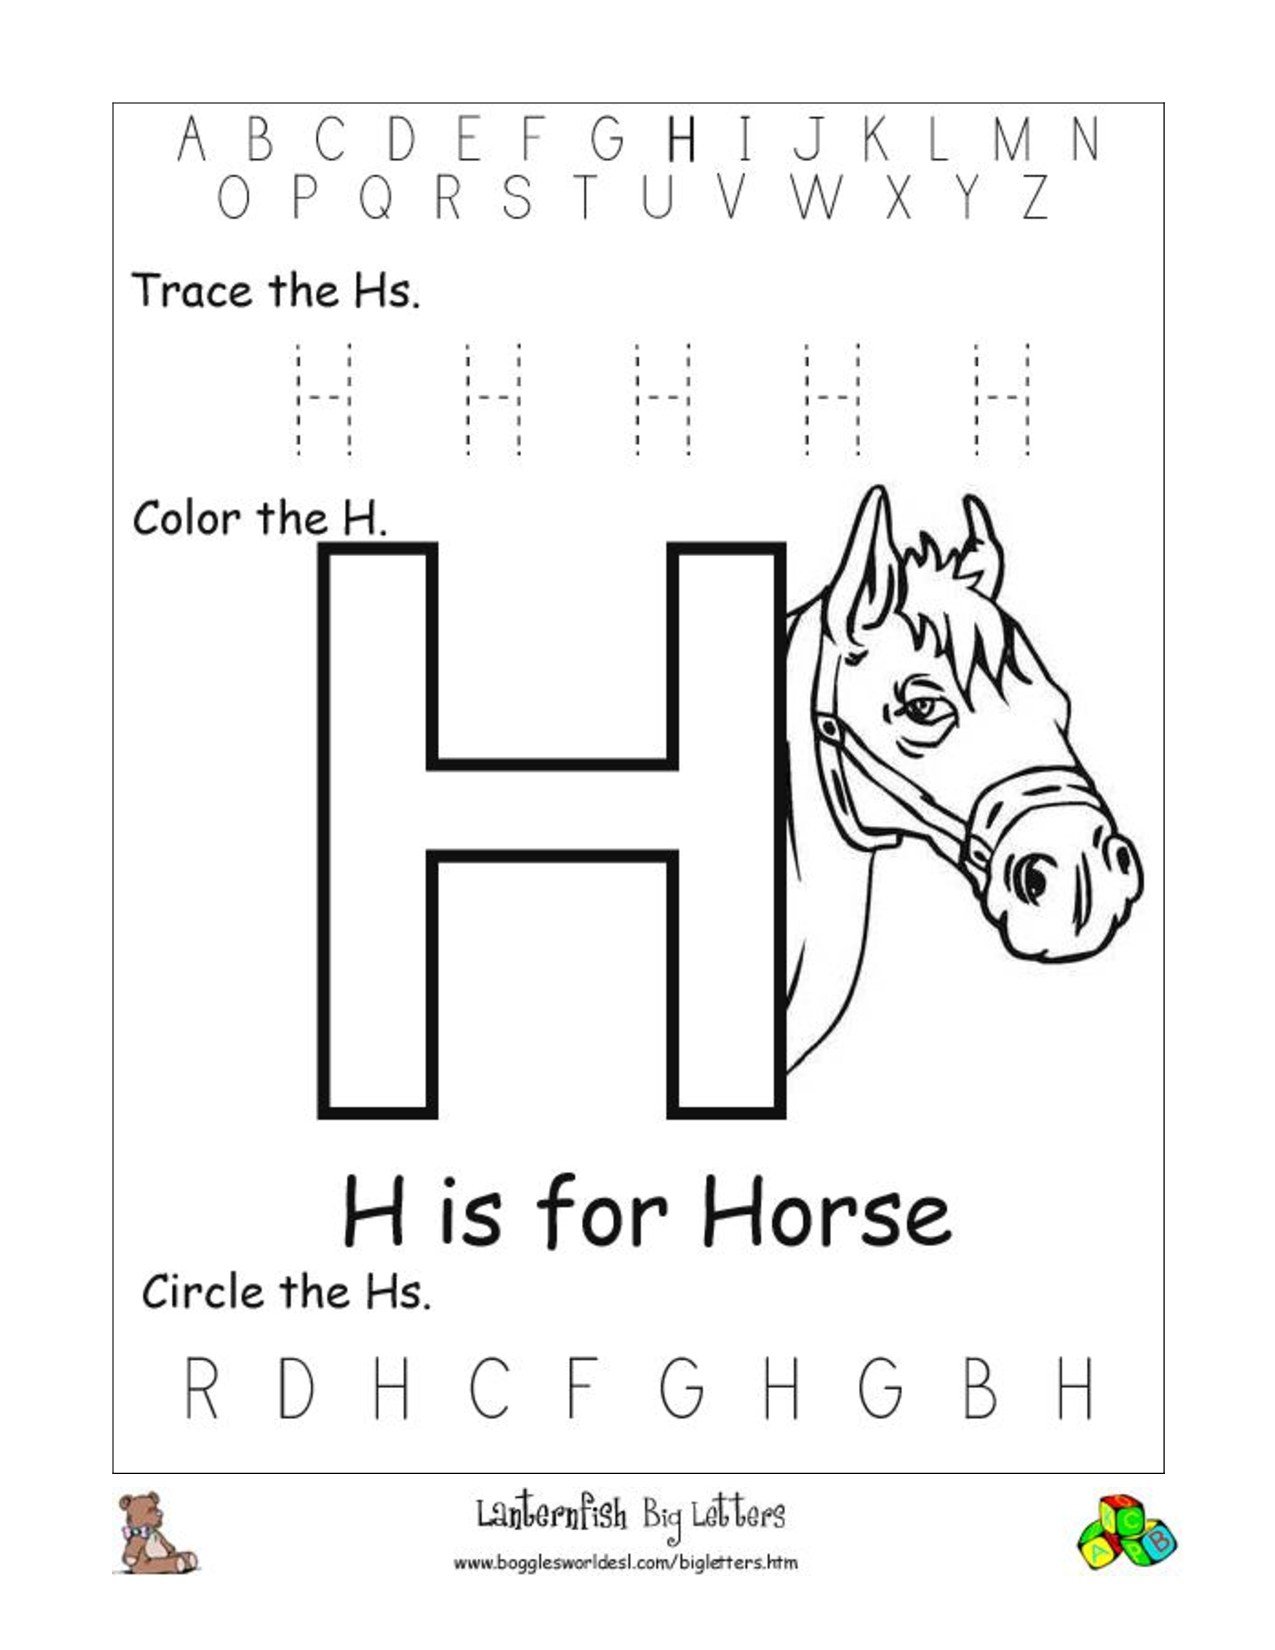 6 Best Images of Printable Letter H Worksheets - Printable Letter H